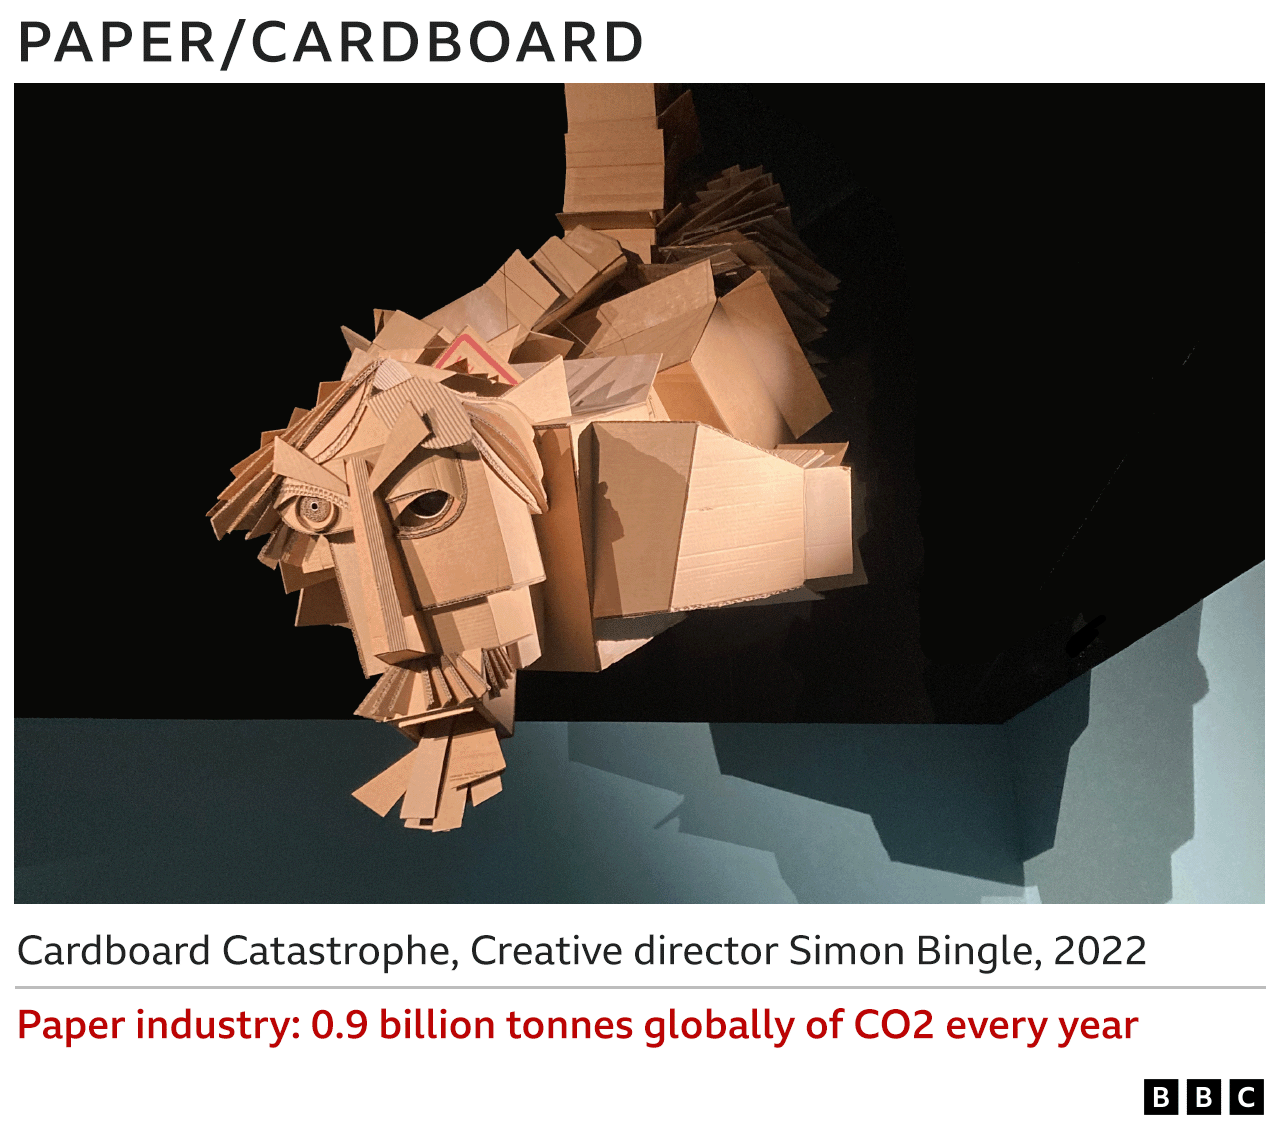 Изображения картонной скульптуры - Картонная катастрофа, Саймон Бингл, 2022 г. - Бумажная промышленность ежегодно выбрасывает 0,9 млрд тонн CO2